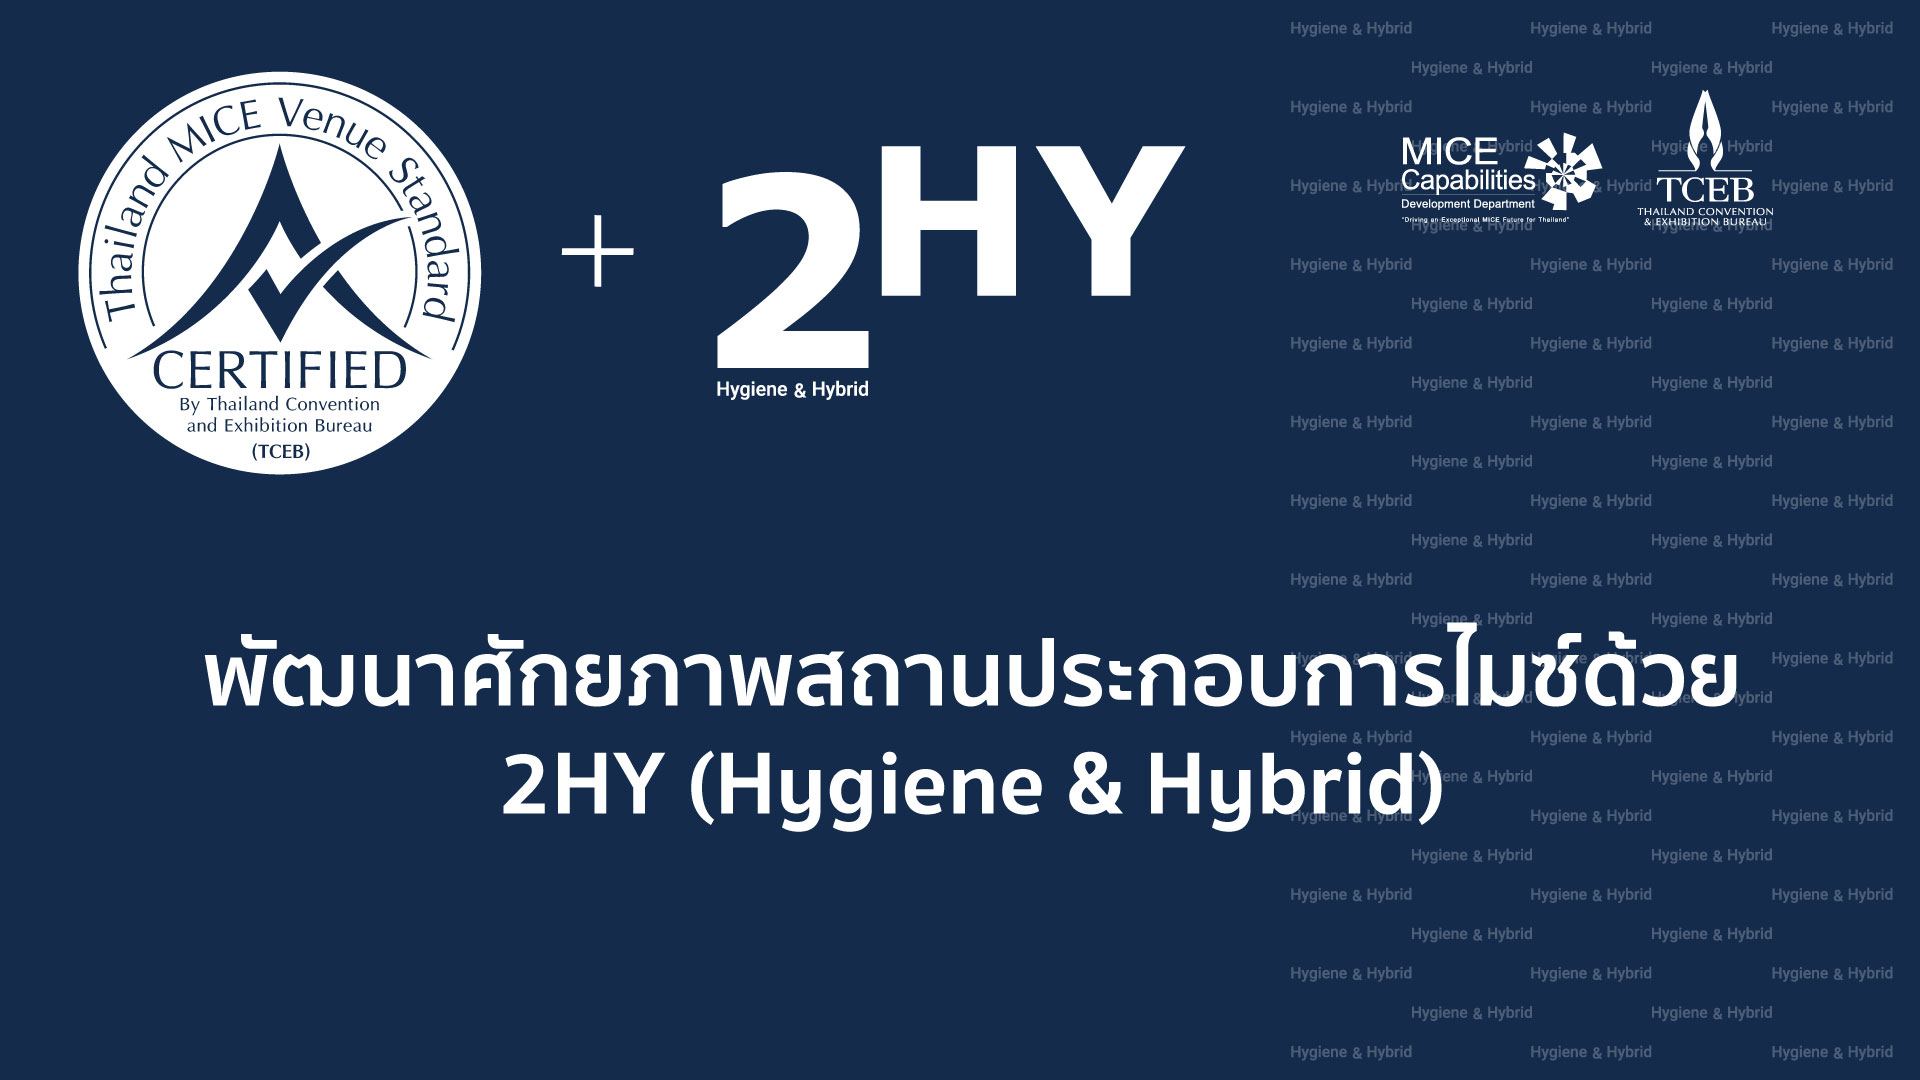 พัฒนาศักยภาพสถานประกอบการไมซ์ด้วย 2HY (Hygiene & Hybrid) 2HY